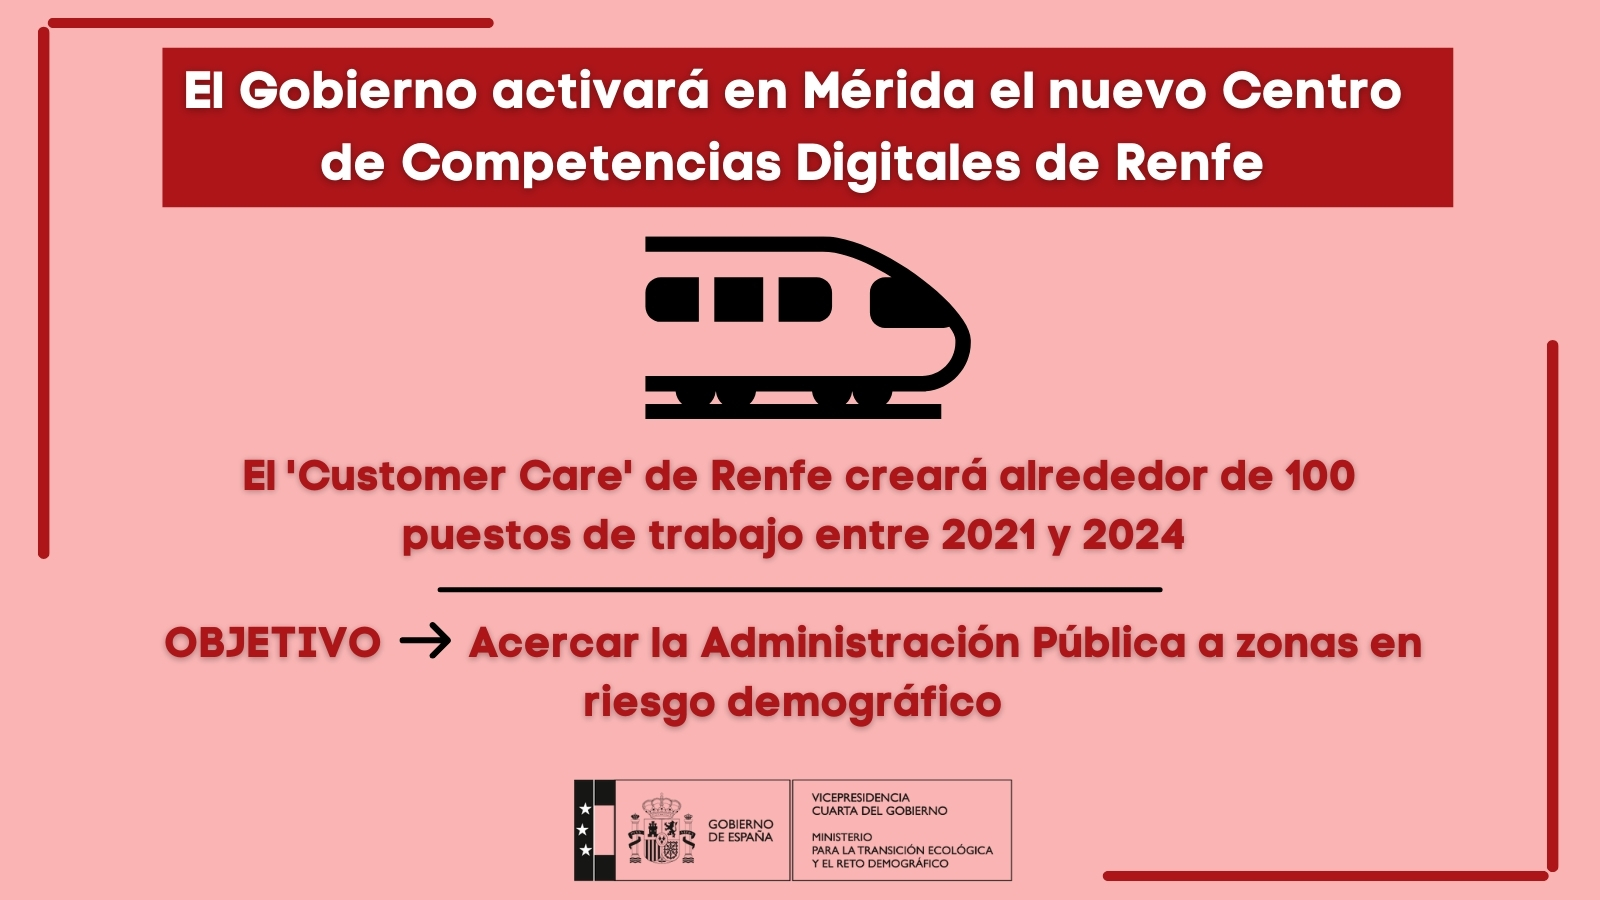 Centro de Renfe en MéridaEl Gobierno pondrá en marcha en Mérida un nuevo Centro de Competencias Digitales de Renfe con 100 puestos de trabajo cualificados